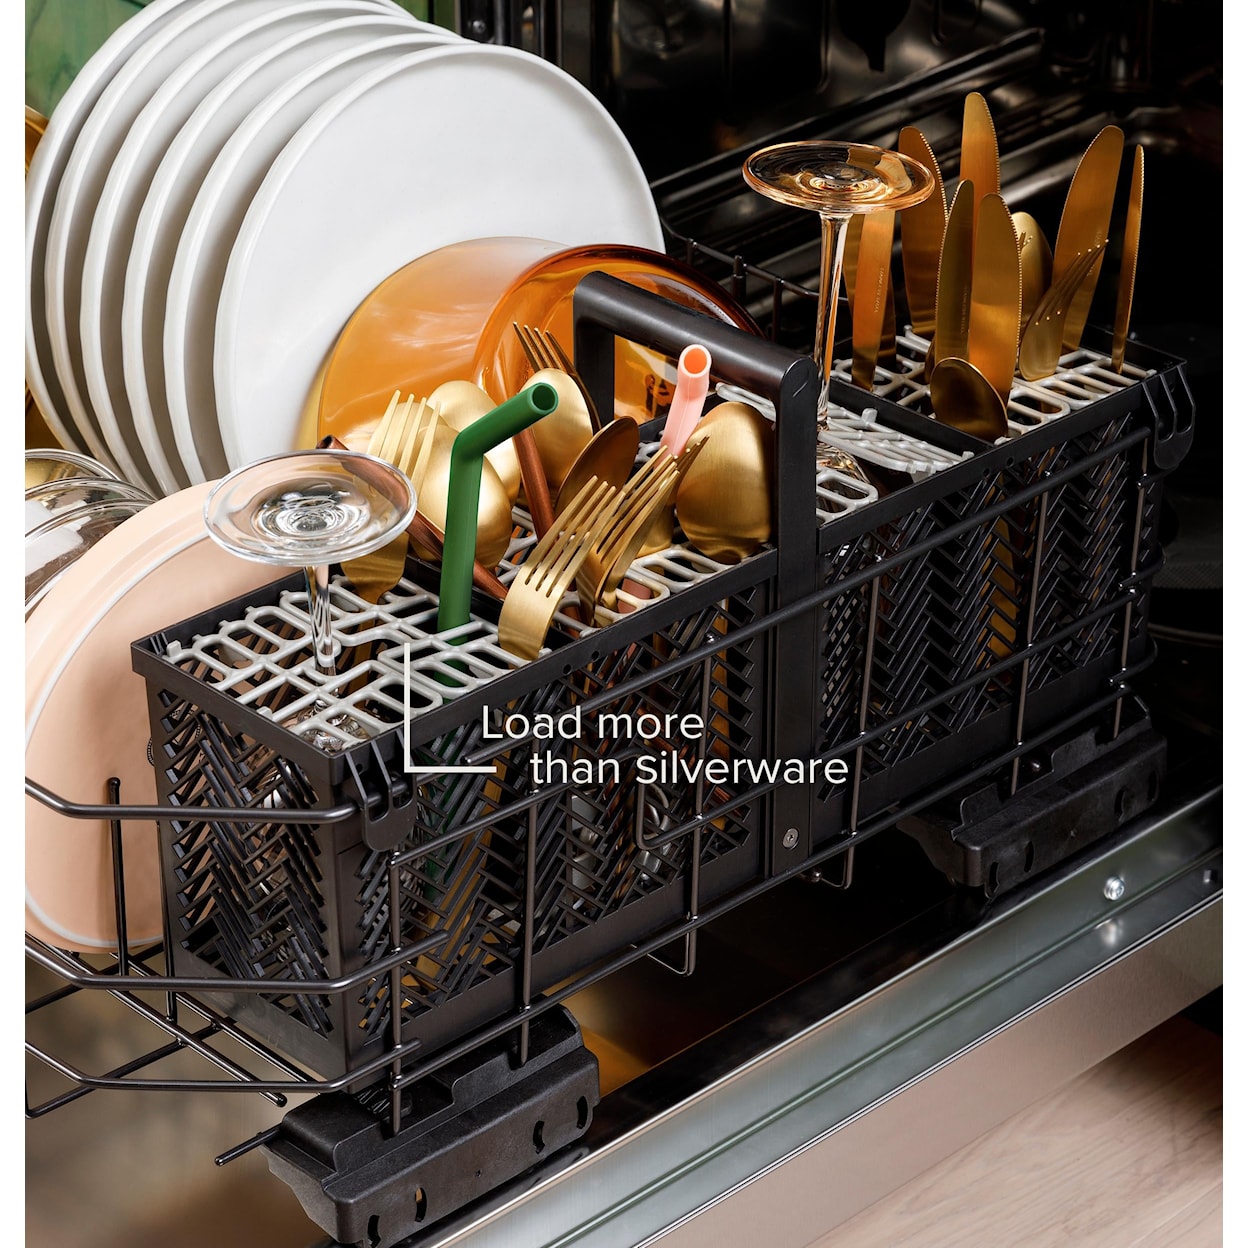 Café Dishwashers Built In Dishwasher